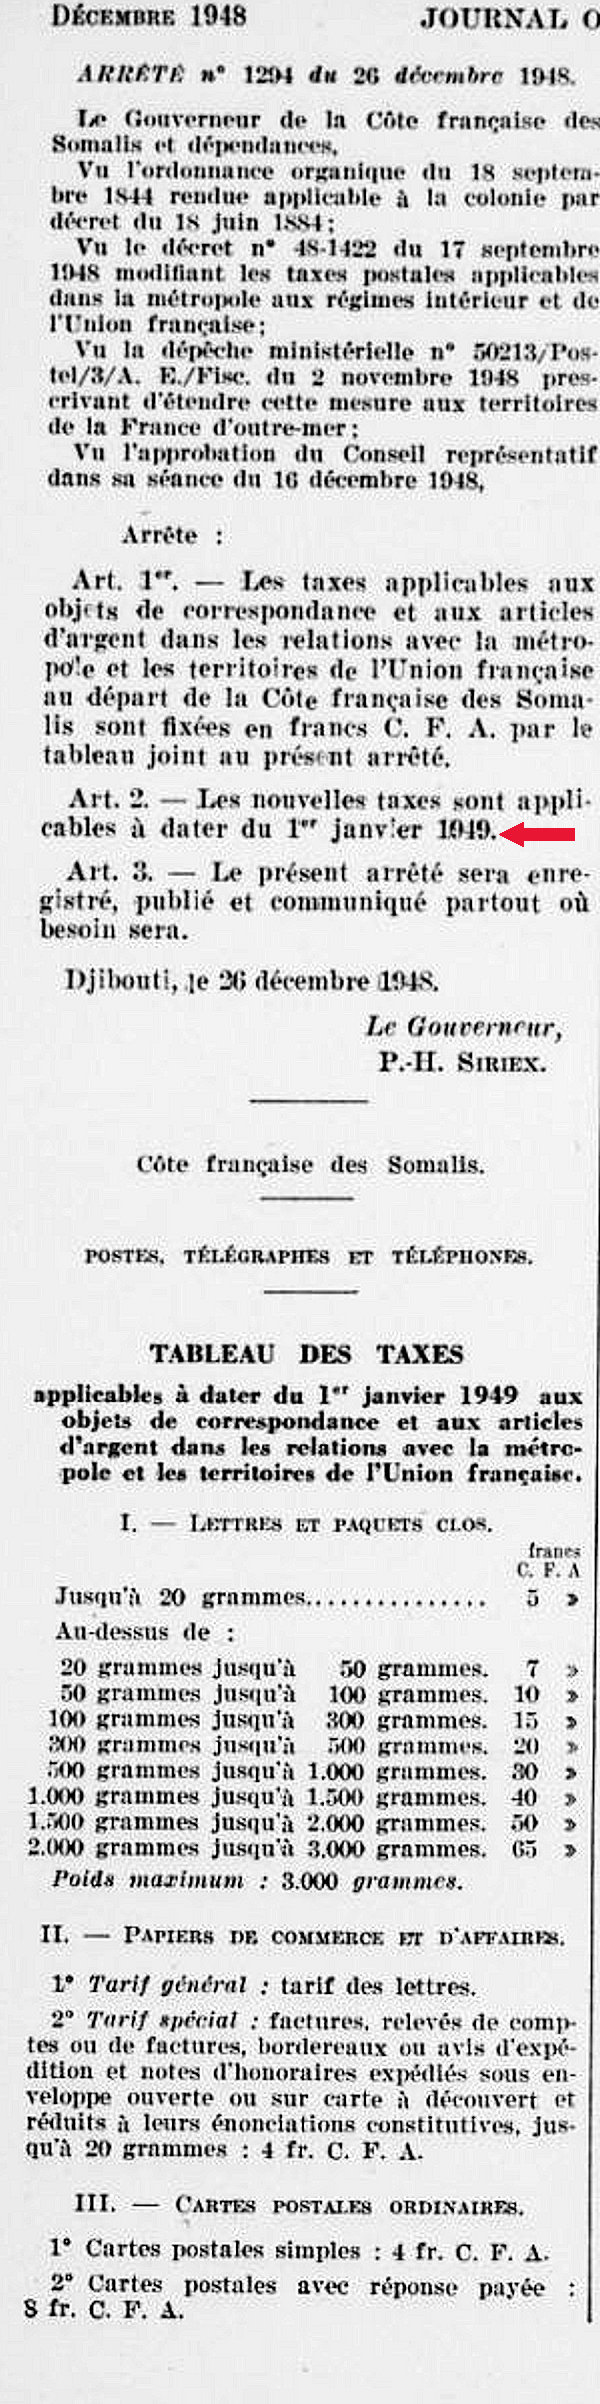 Tarifs Union Française Djibouti 1er janvier 1949